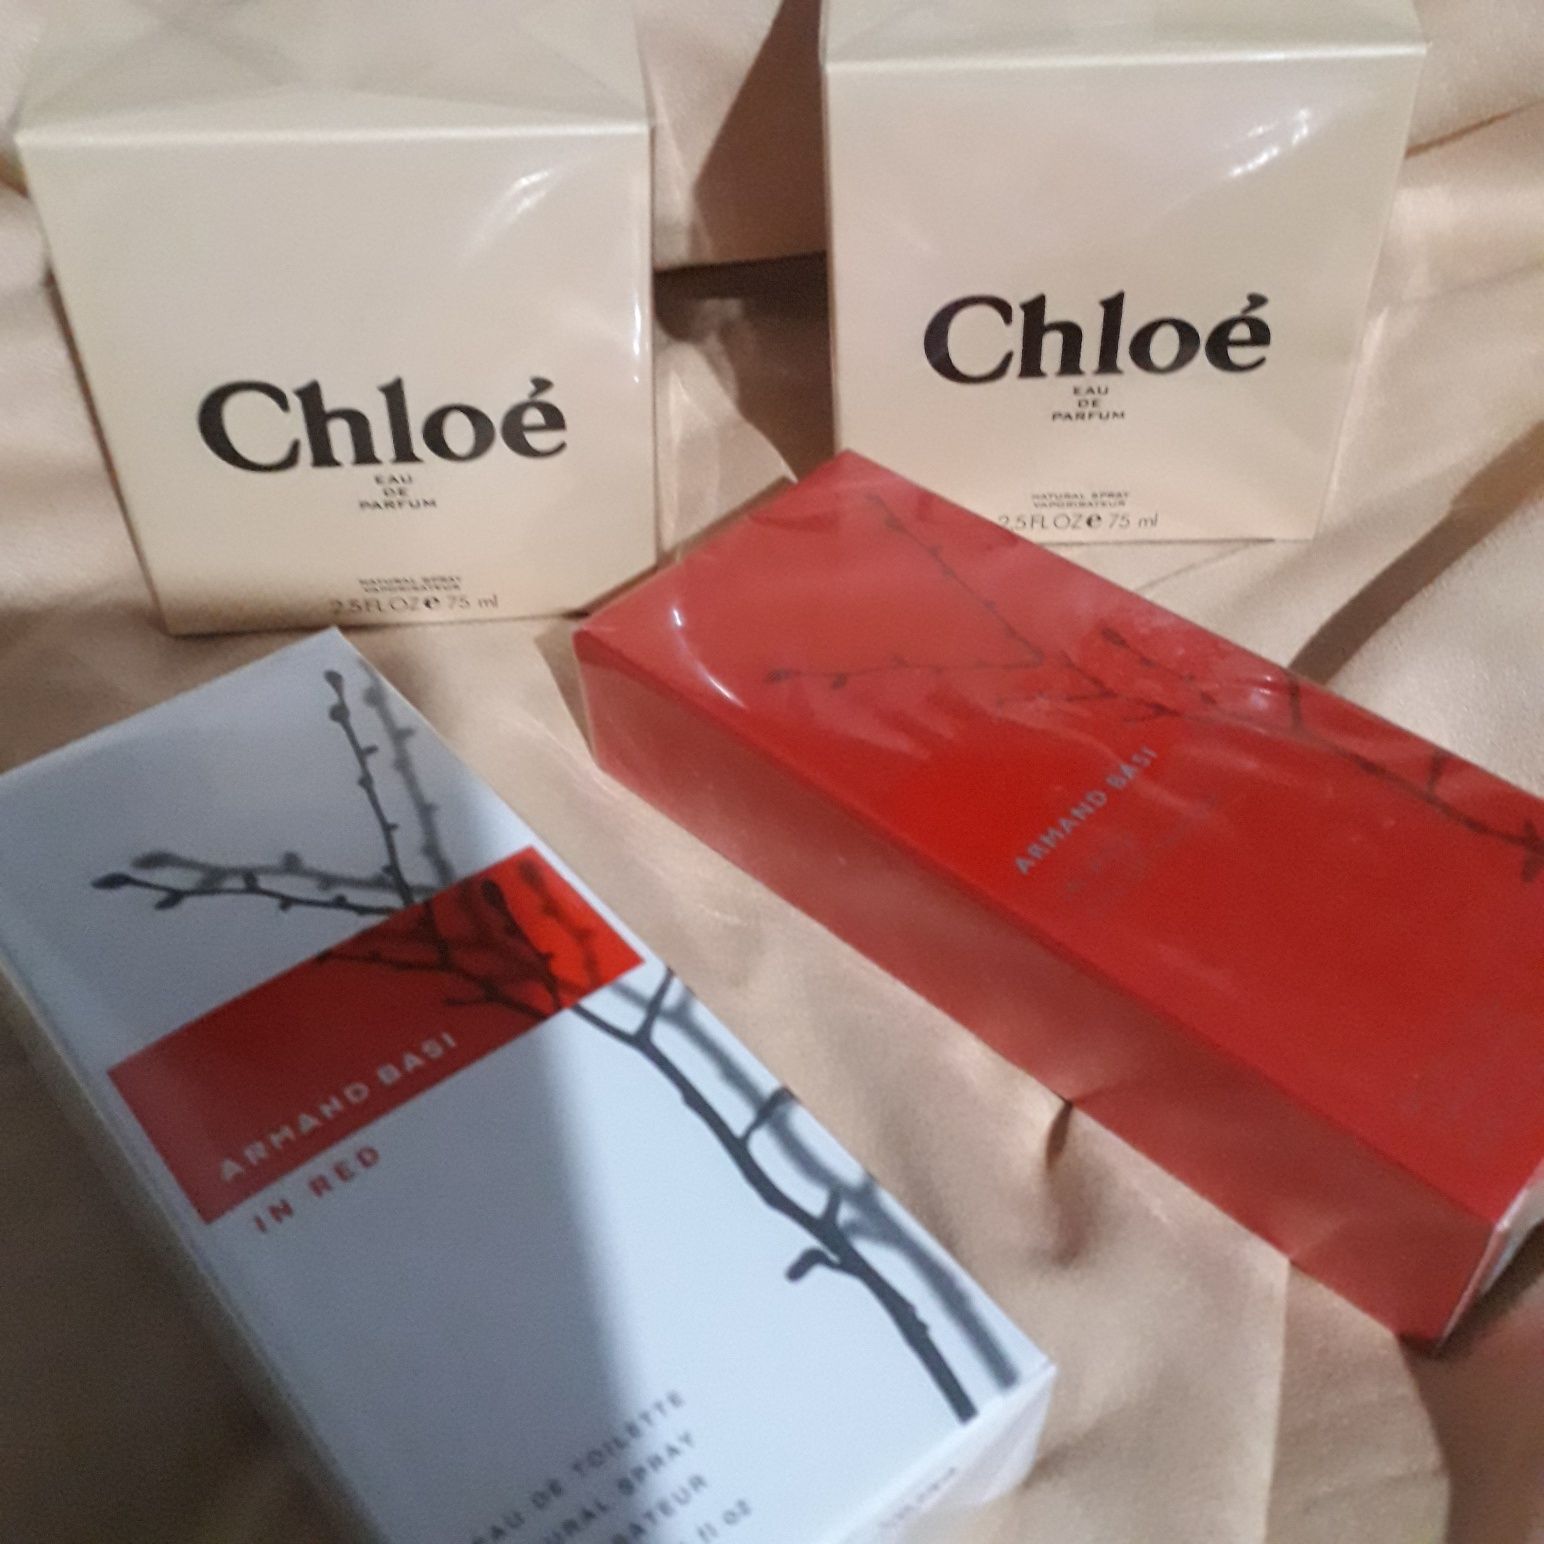 Chloe.Armand Basi in red.100 ml